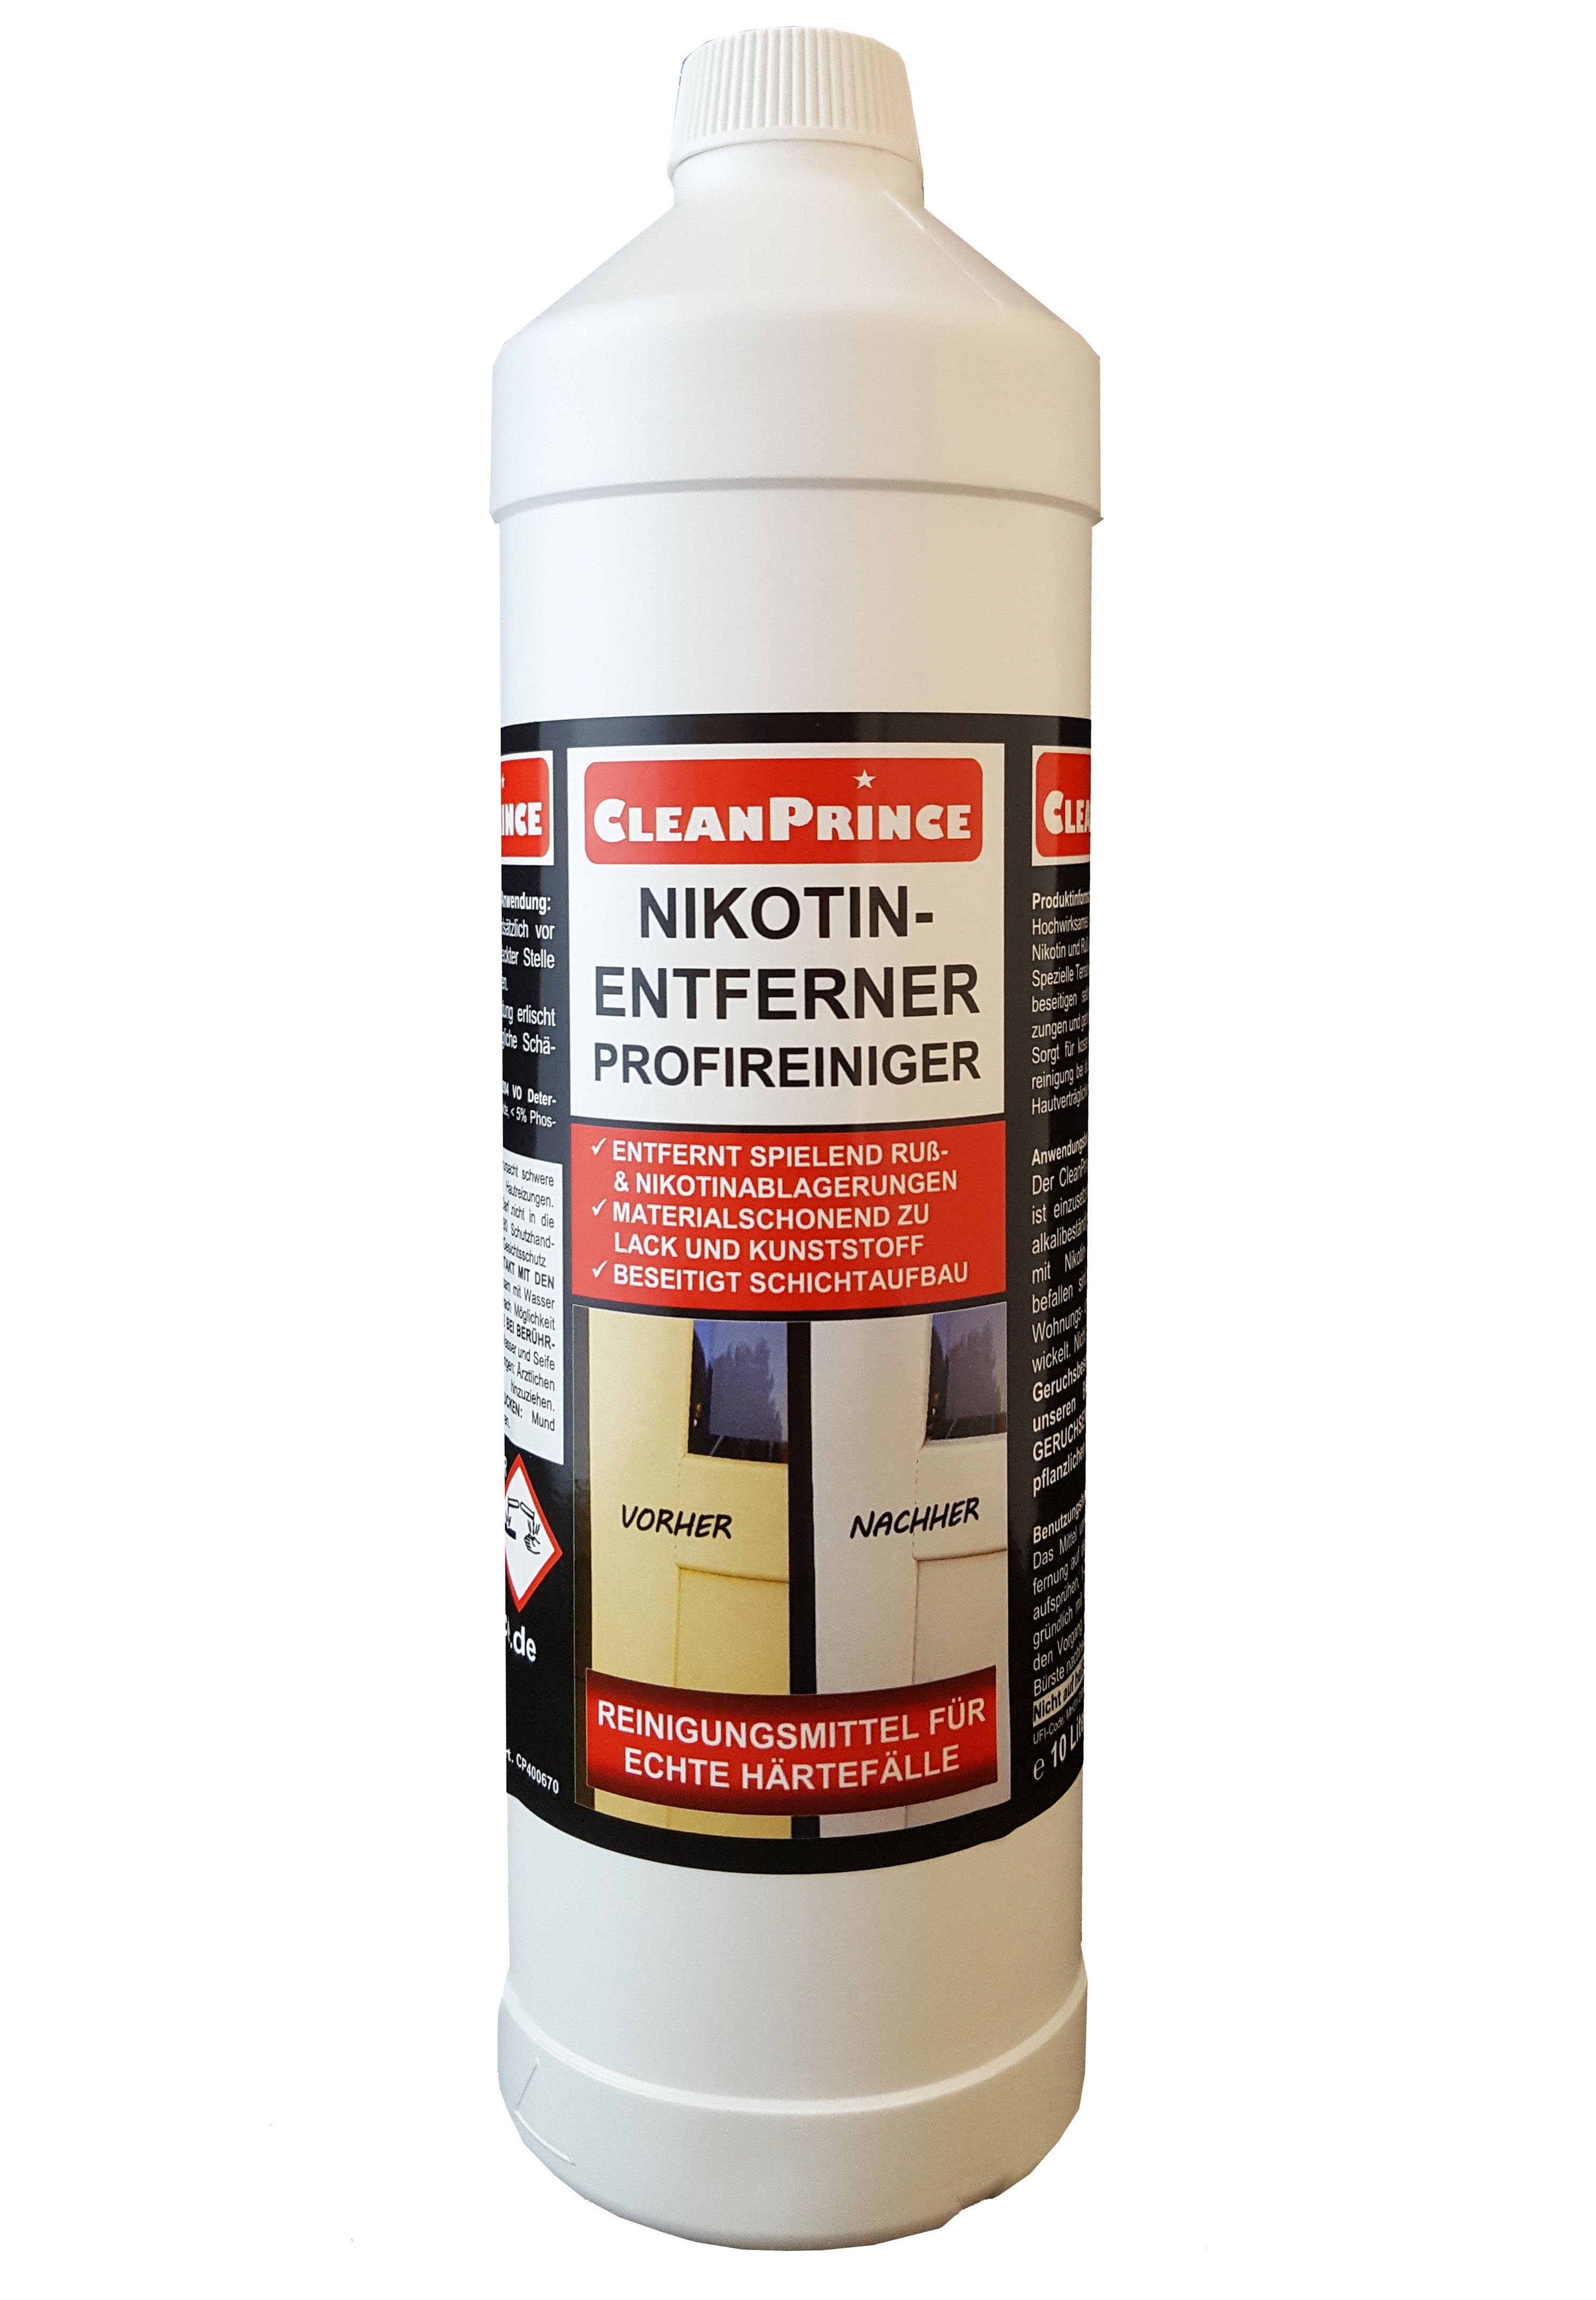 befallenen von Ruß Reinigungskonzentrat Nikotinentferner (Reinigung Oberflächen) Liter Nikotin Profireiniger 1 CleanPrince und